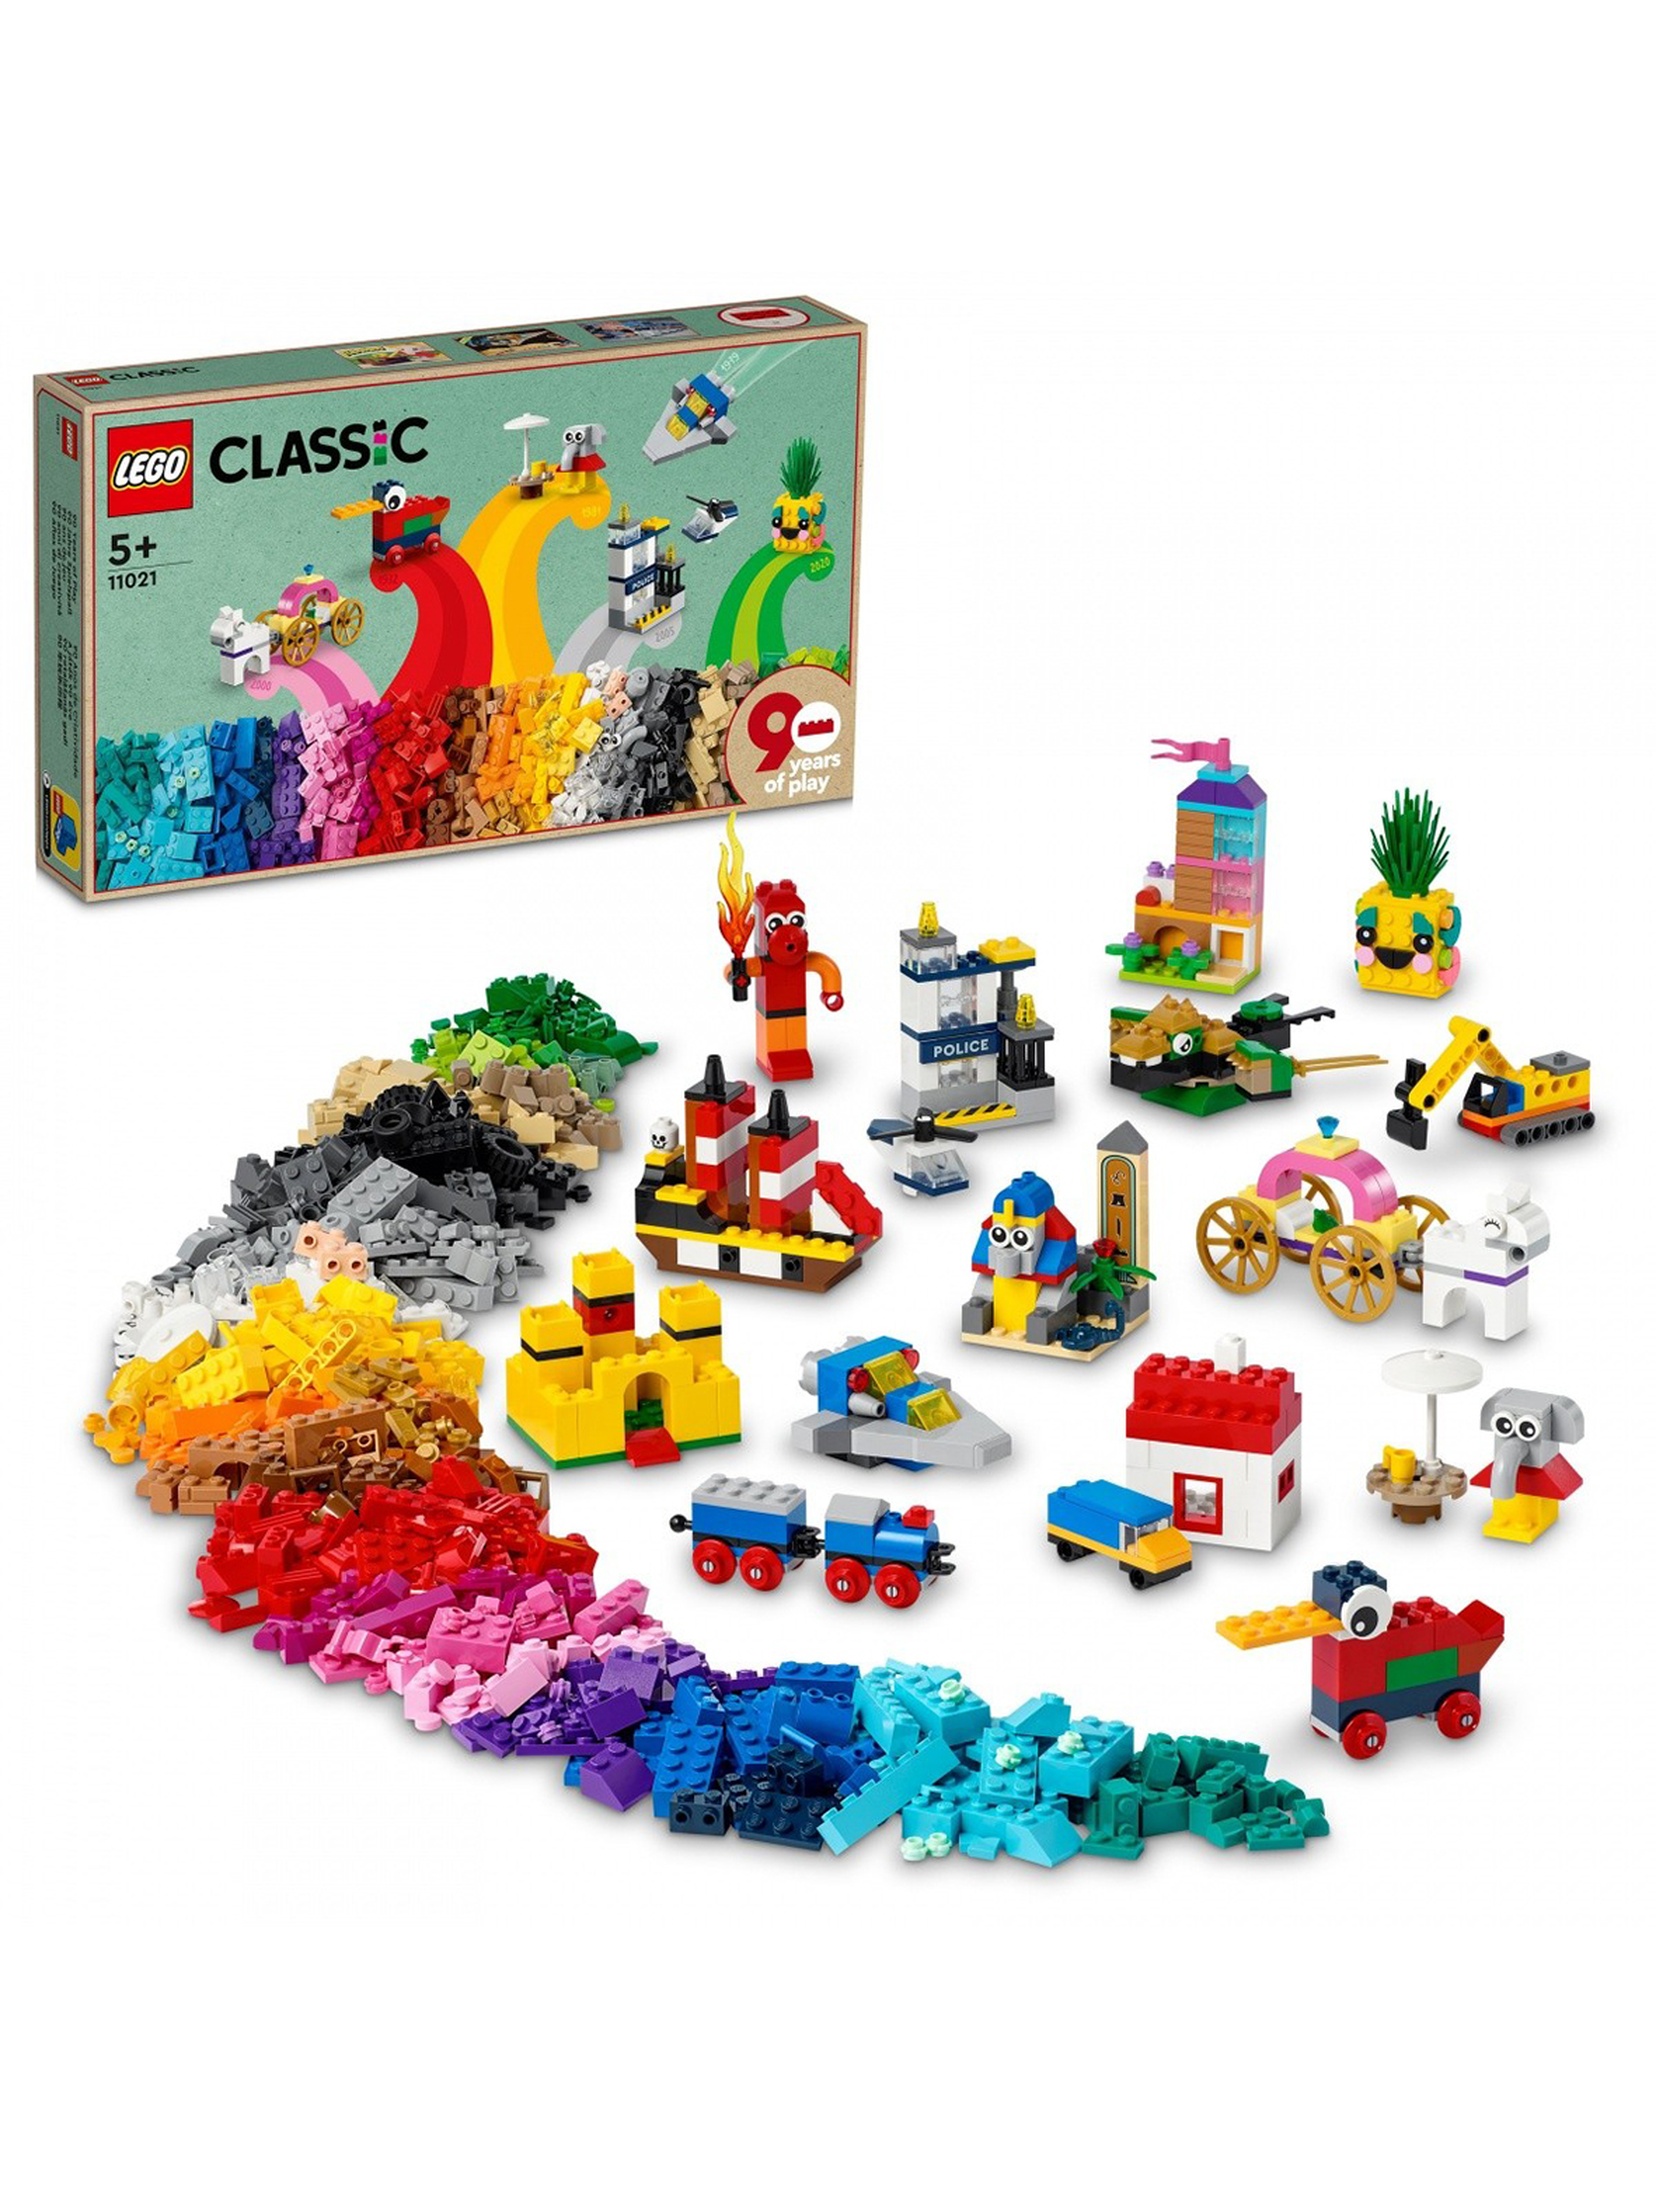 LEGO Classic - 90 lat zabawy 11021 - 1100 elementów, wiek 5+